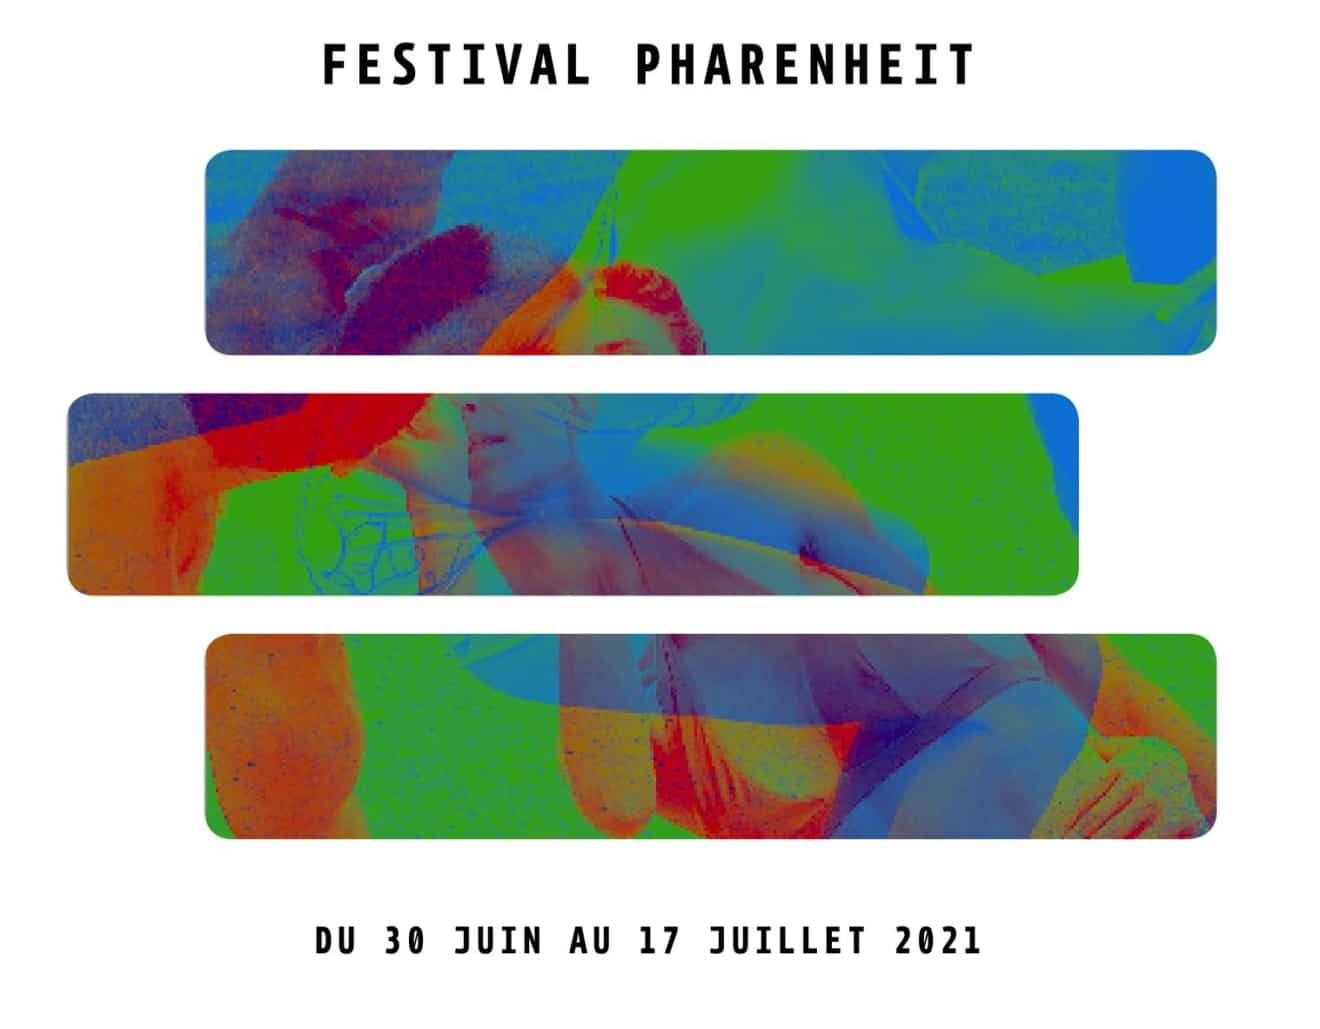 Le festival Pharenheit 2021